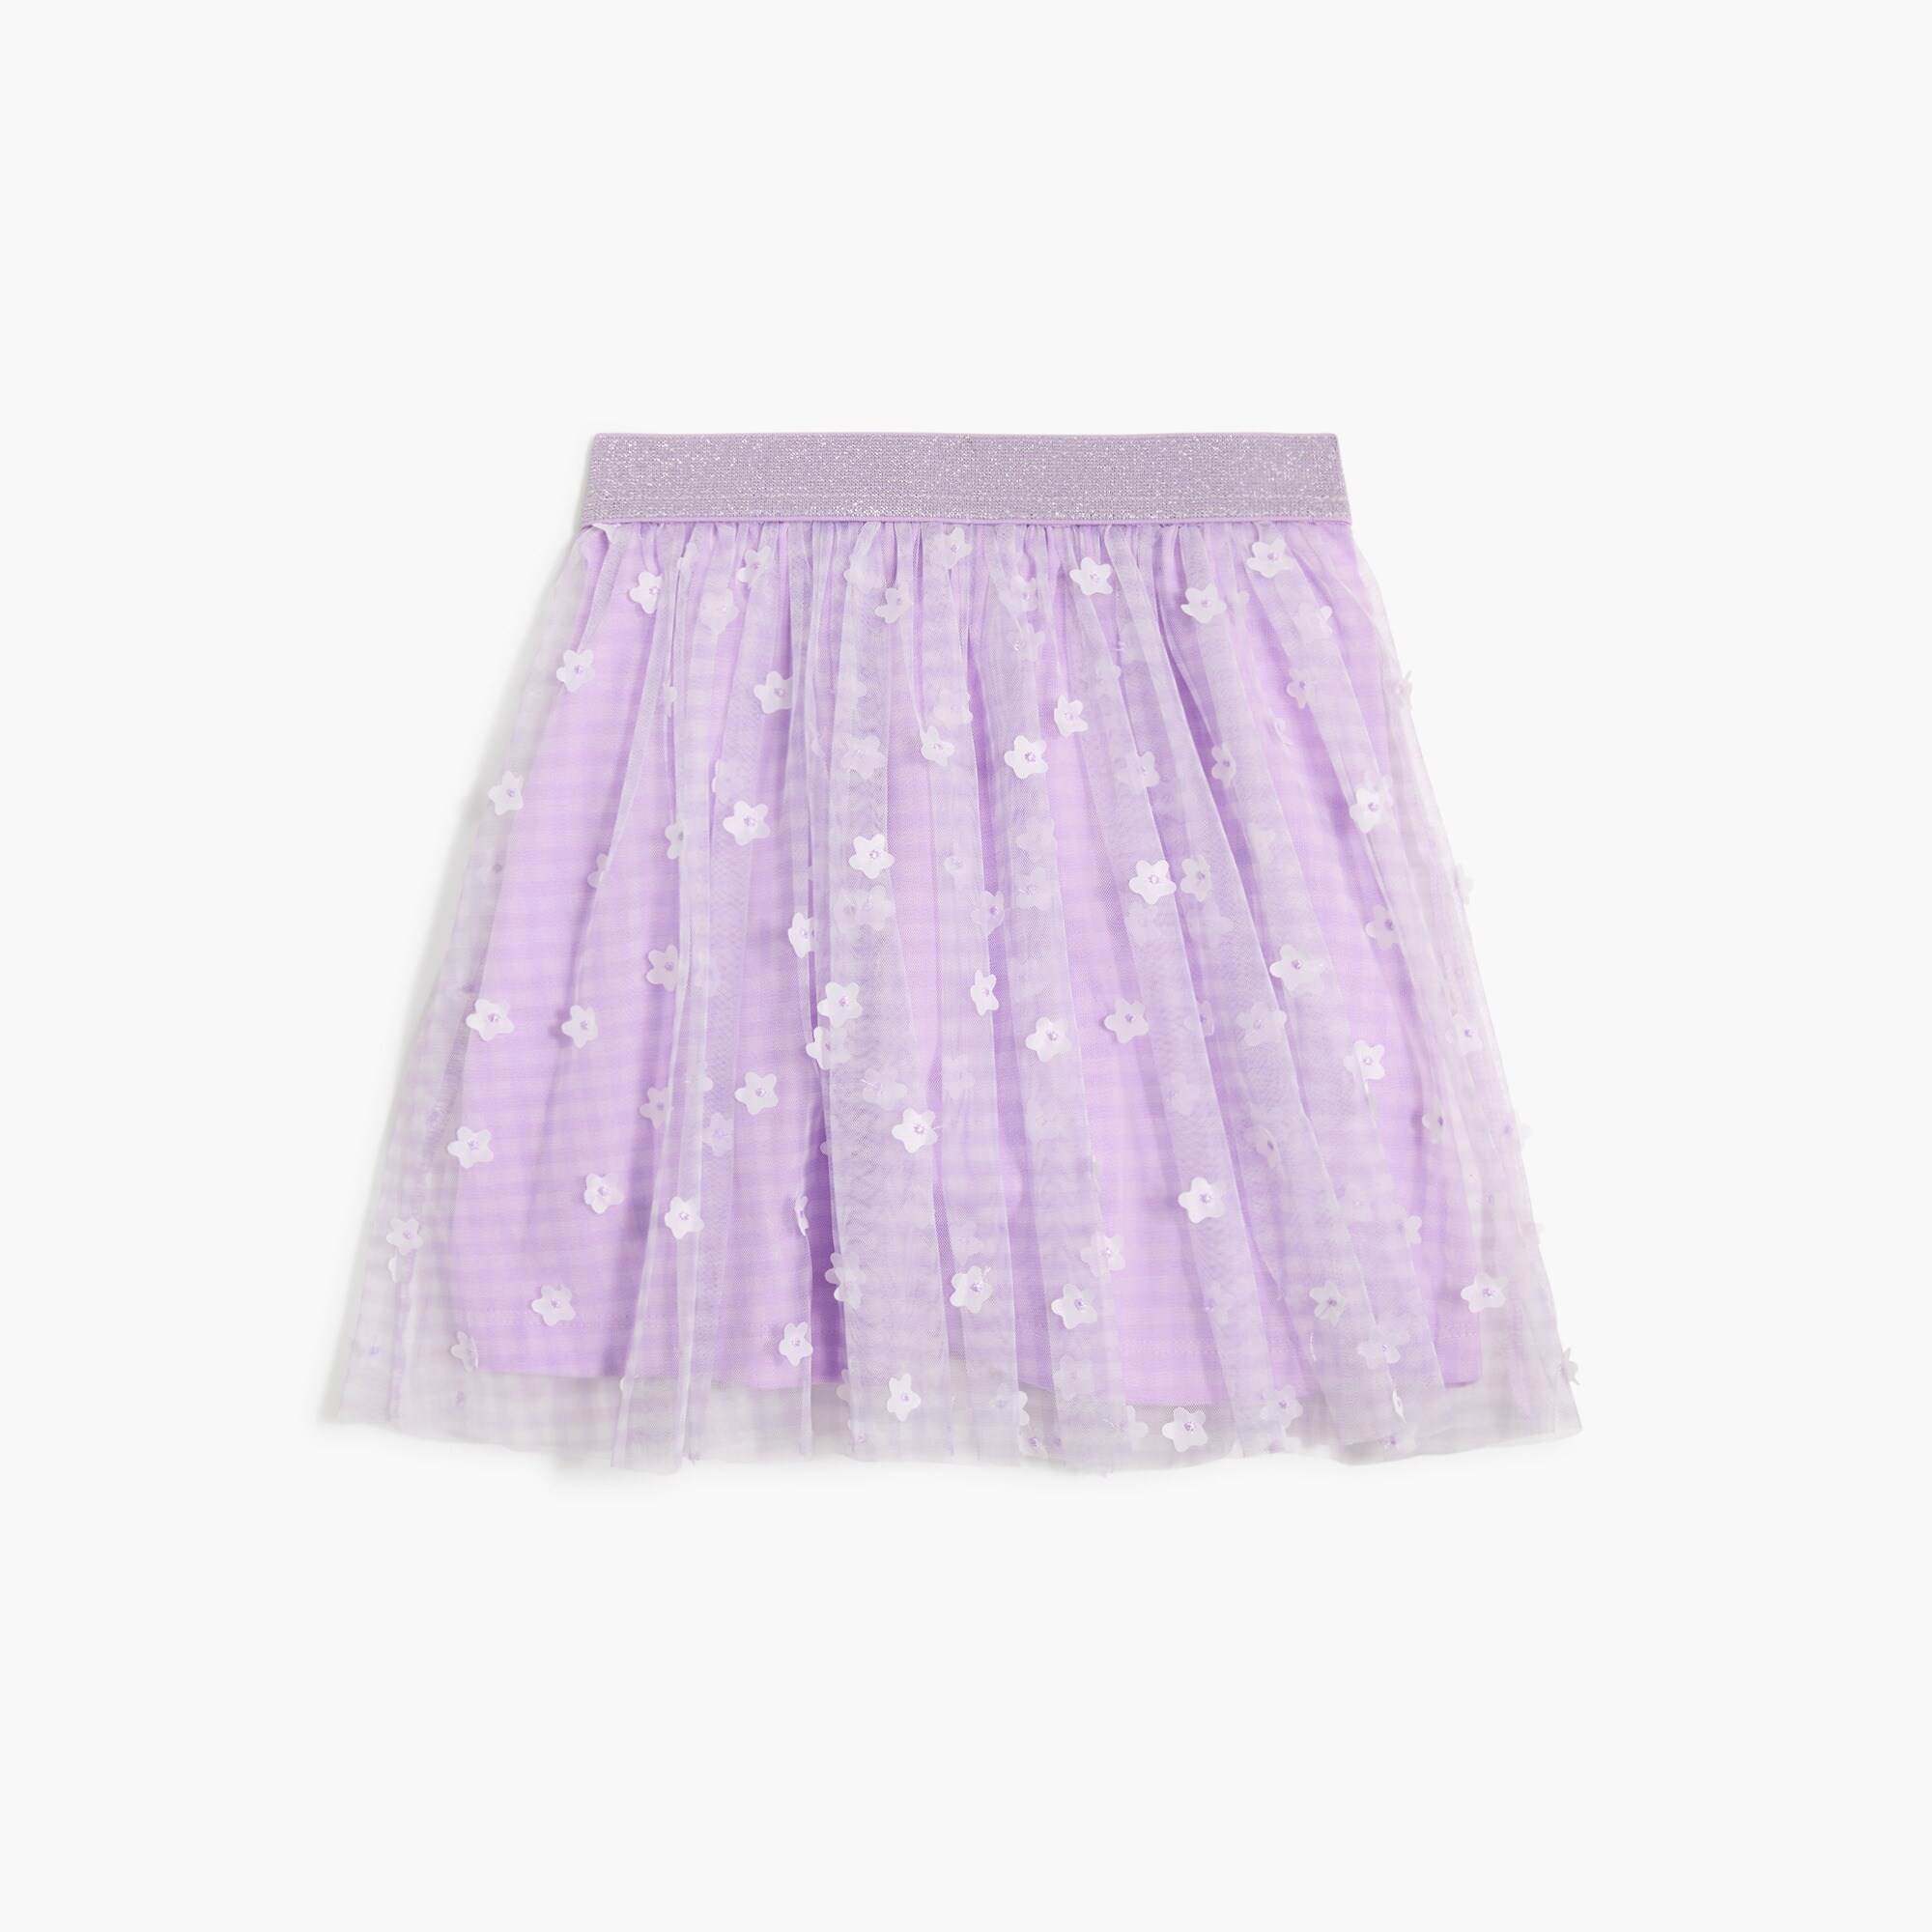  Girls' gingham floral skirt